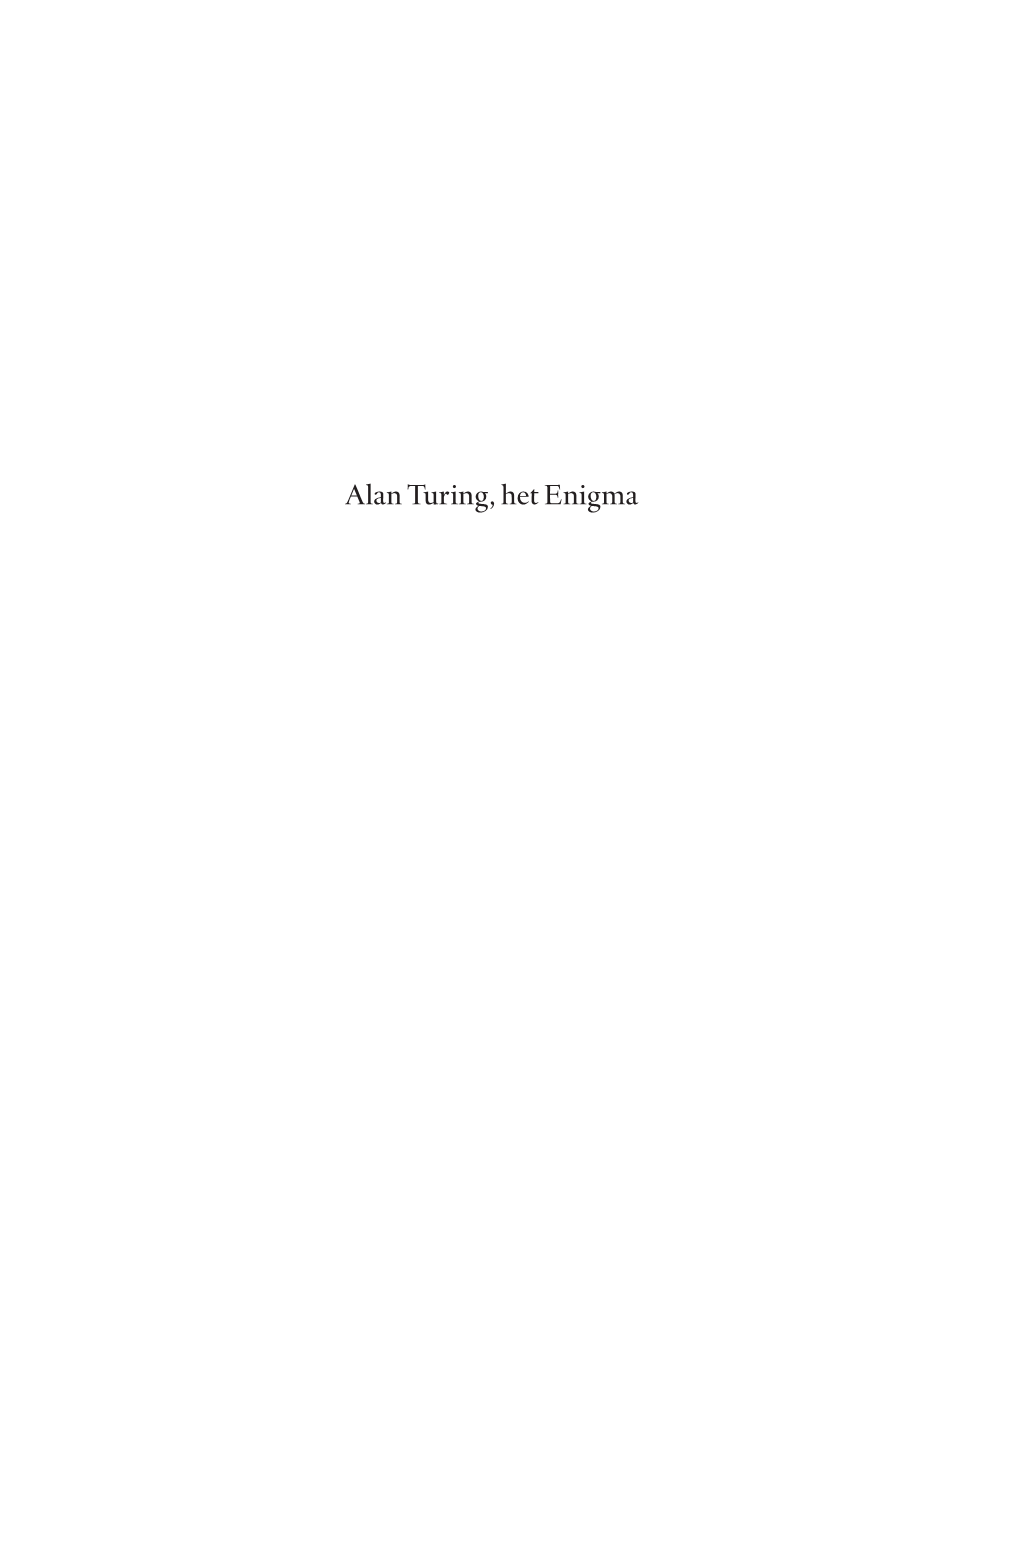 Alan Turing, Het Enigma